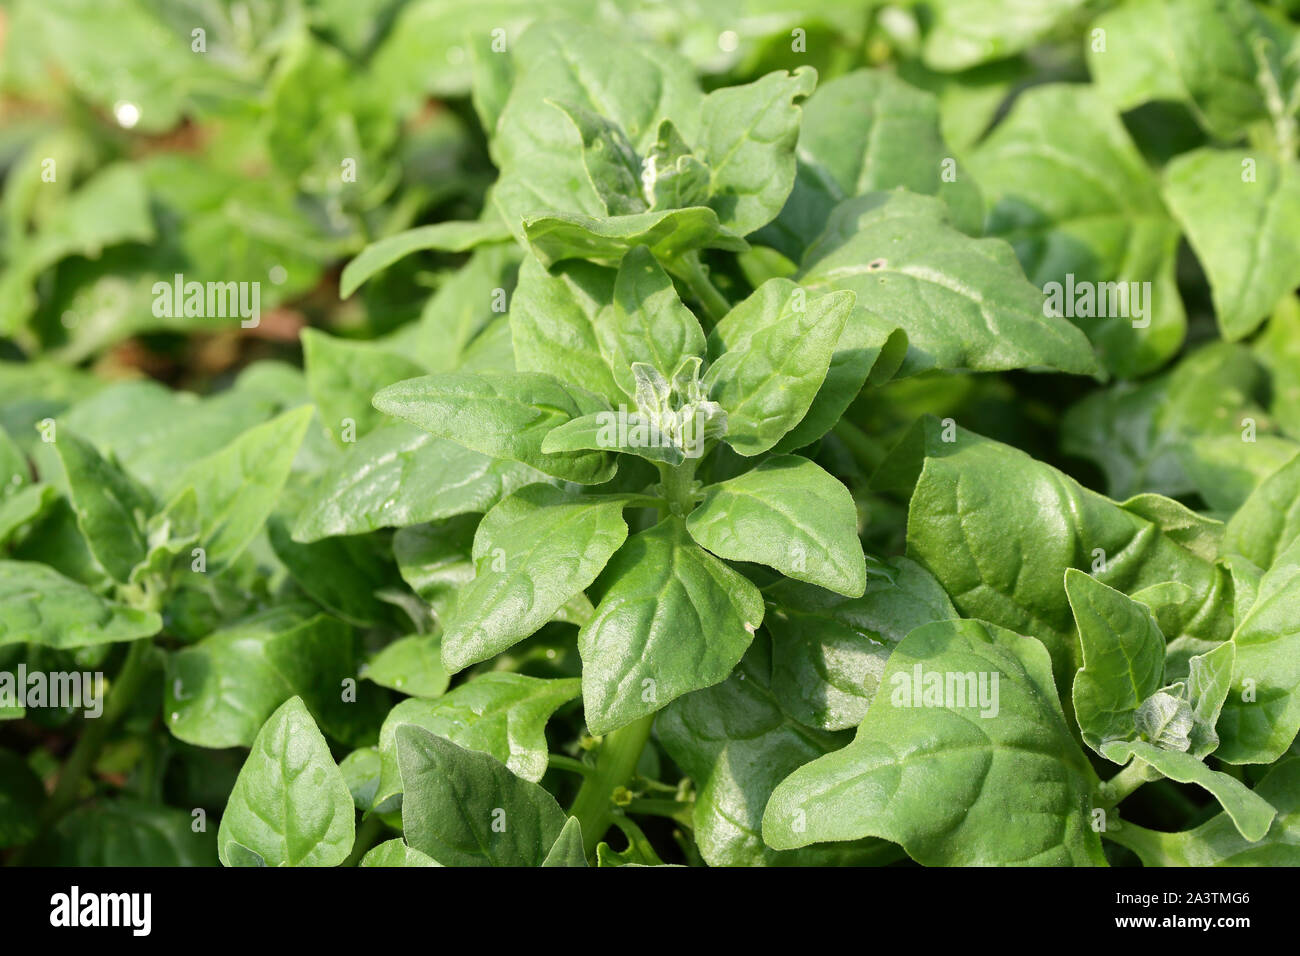 Neuseeland Spinat/Cook's Kohl (Tetragonia pedunculata tetragonioides) Der essbare Blätter Pflanze als grünen Gemüse wie Spinat verwendet Stockfoto